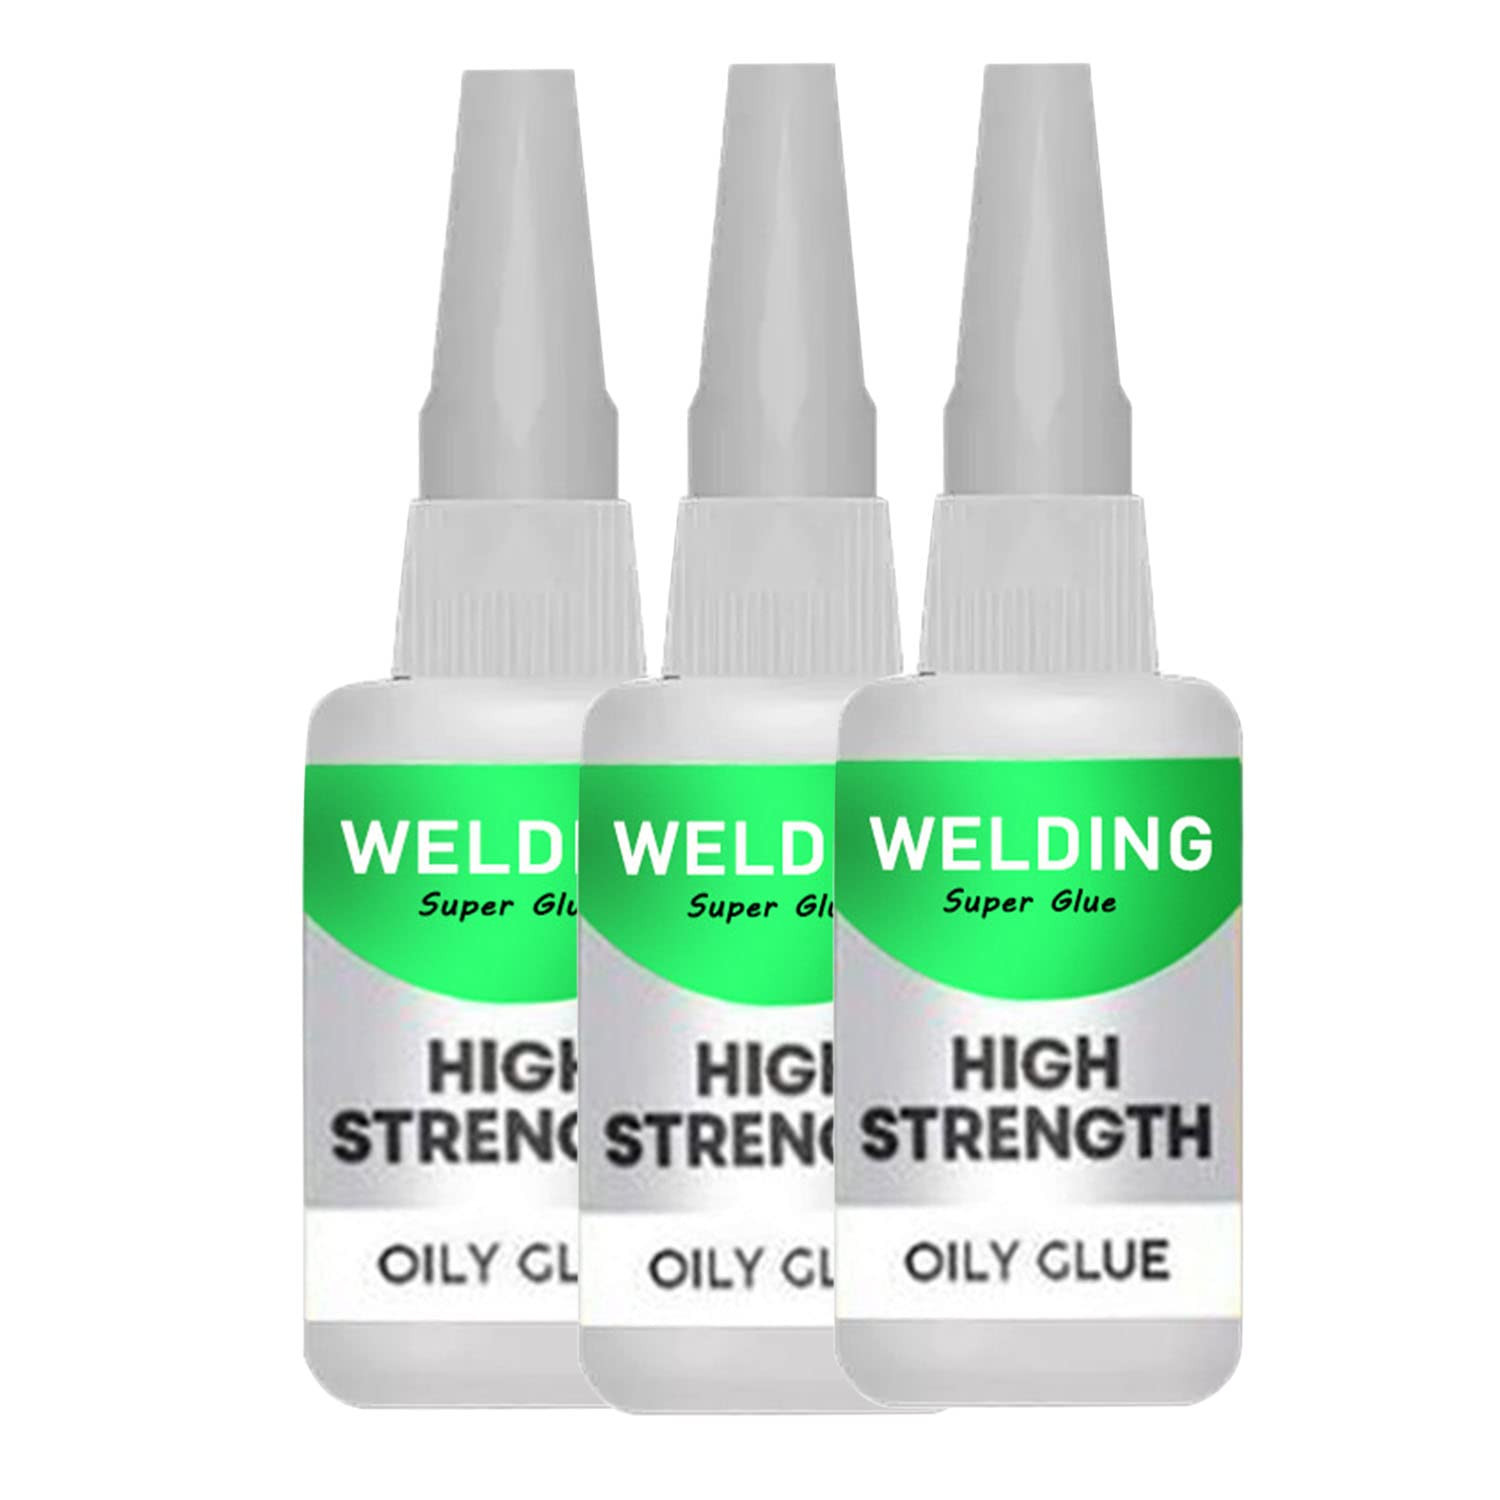 Fridja 50ml Welding High-Strength Oily Glue - Uniglue Universal Super Glue,Pack of 2, Clear